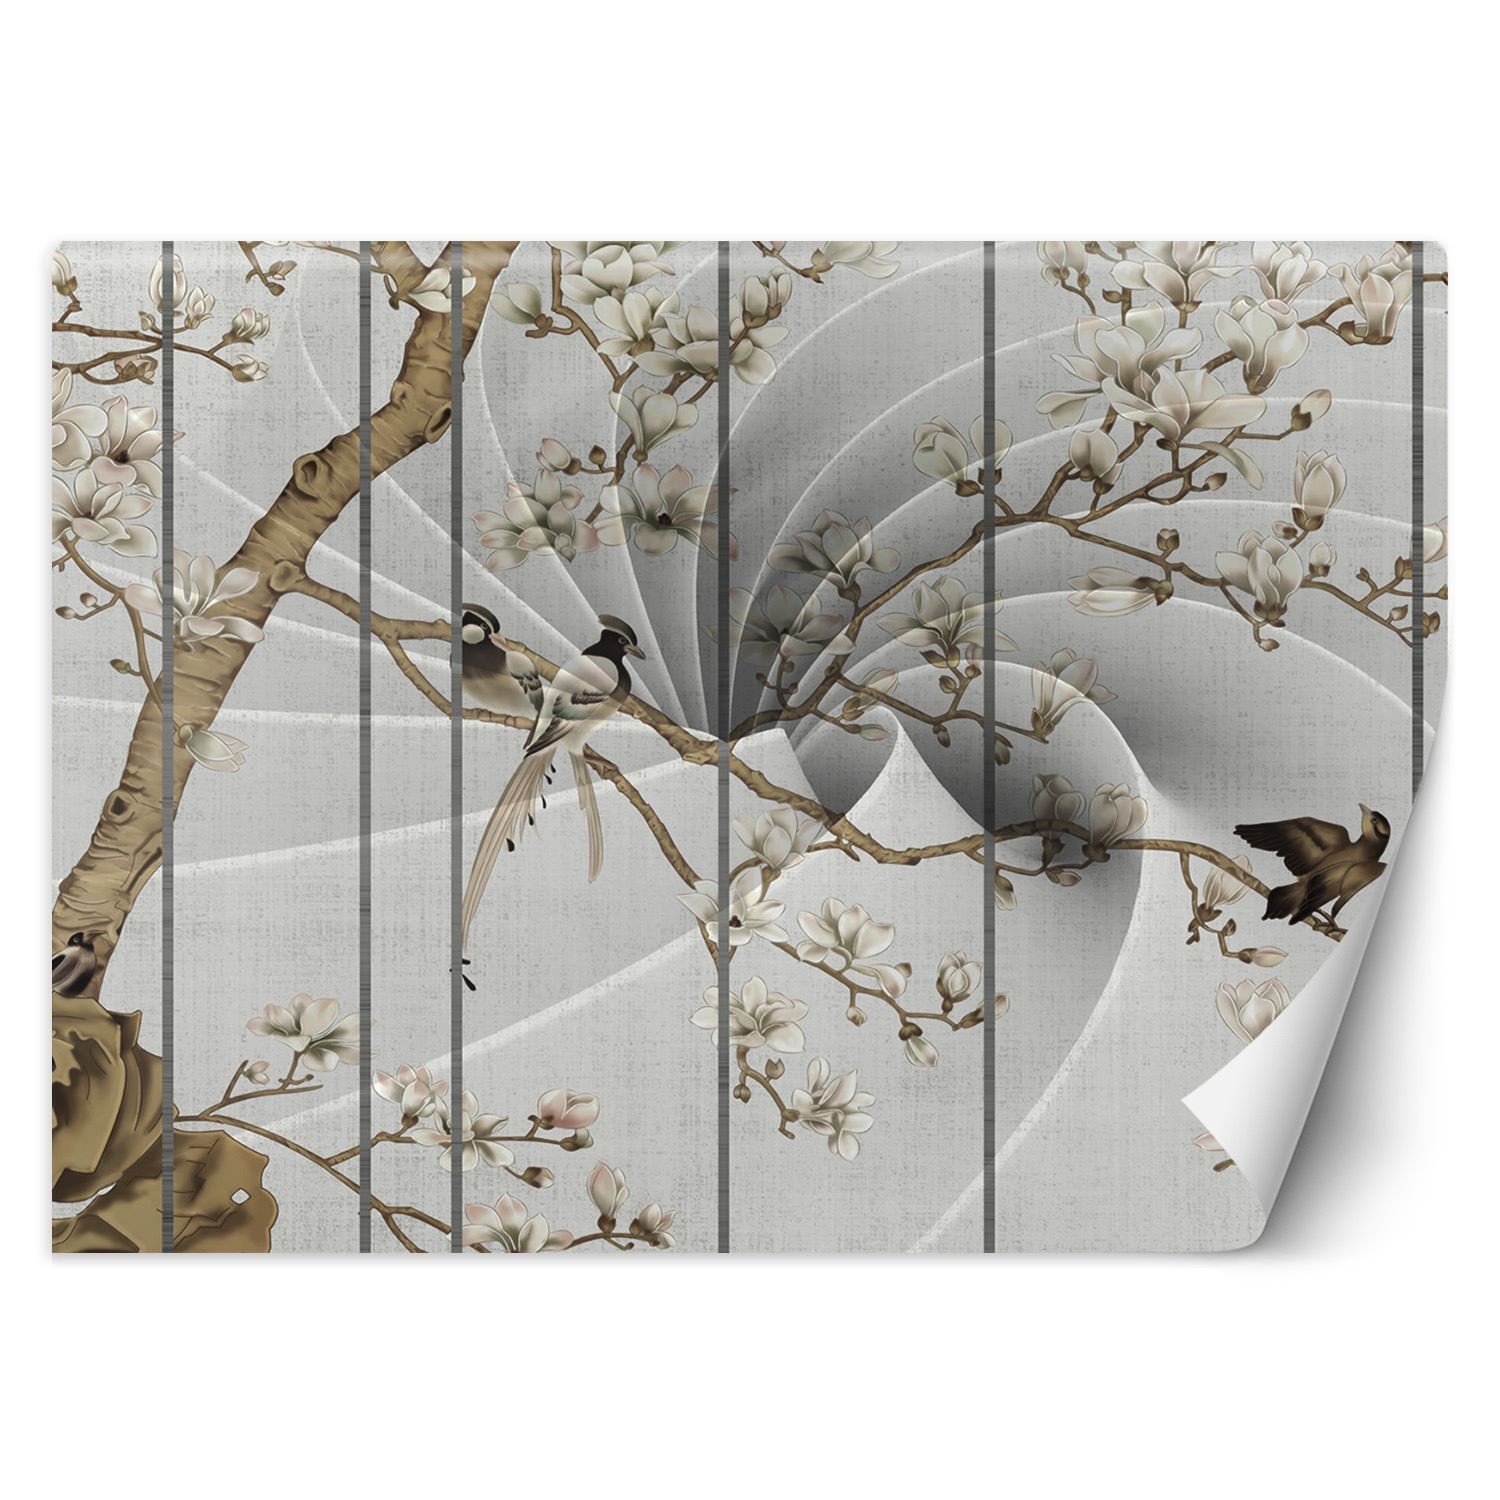 Trend24 – Behang – Vogels Op Een Boom – Behangpapier – Behang Woonkamer – Fotobehang – 200x140x2 cm – Incl. behanglijm